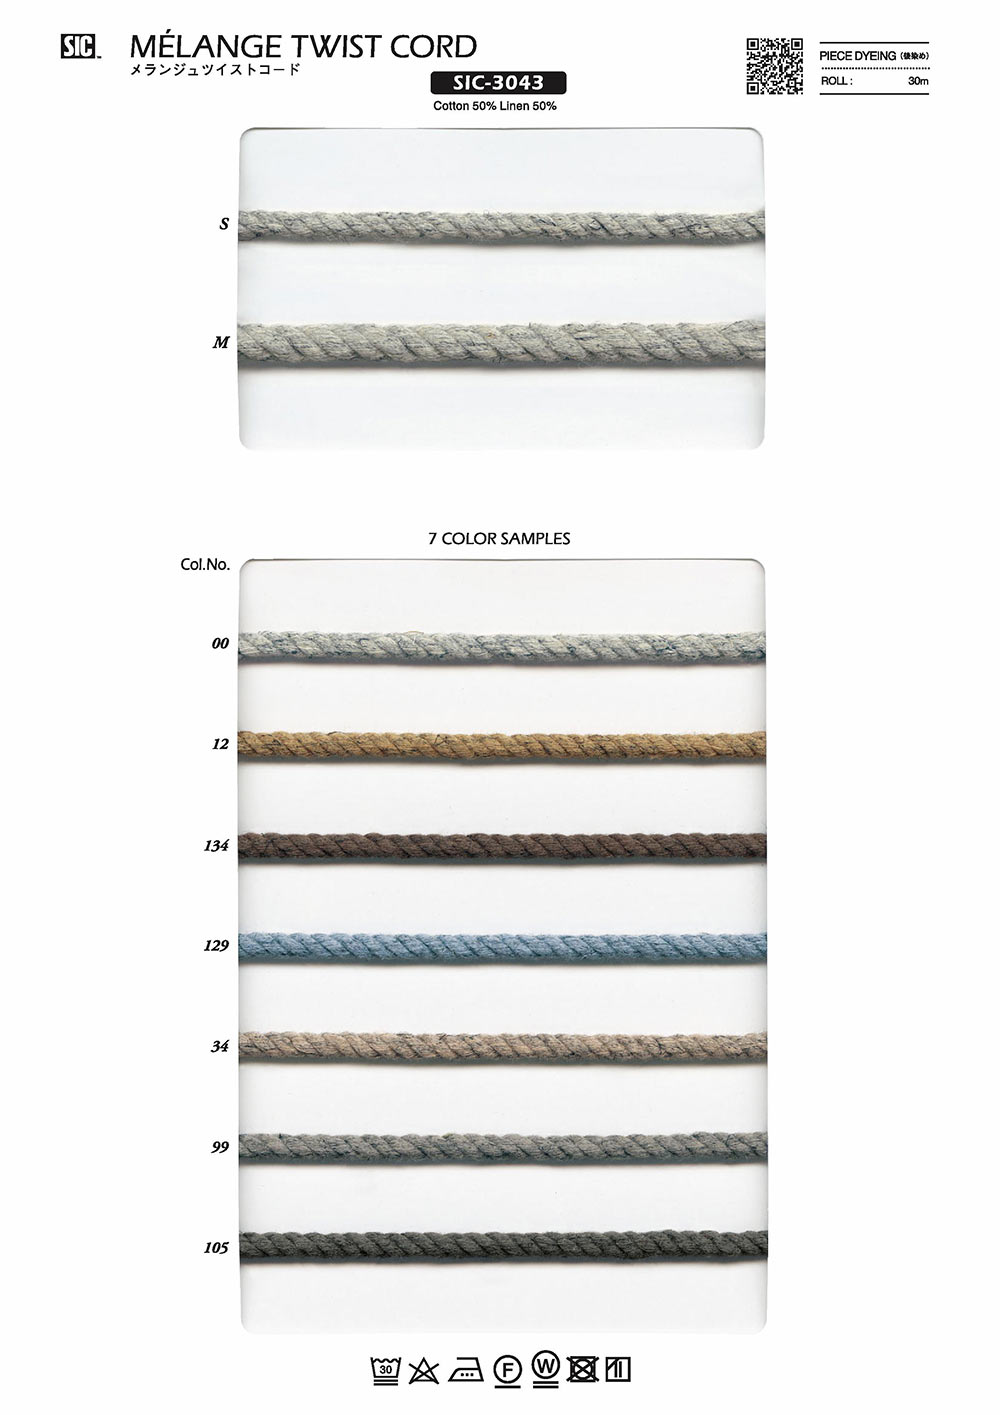 SIC-3043 Melange Twist Cord[Ribbon Tape Cord] SHINDO(SIC)